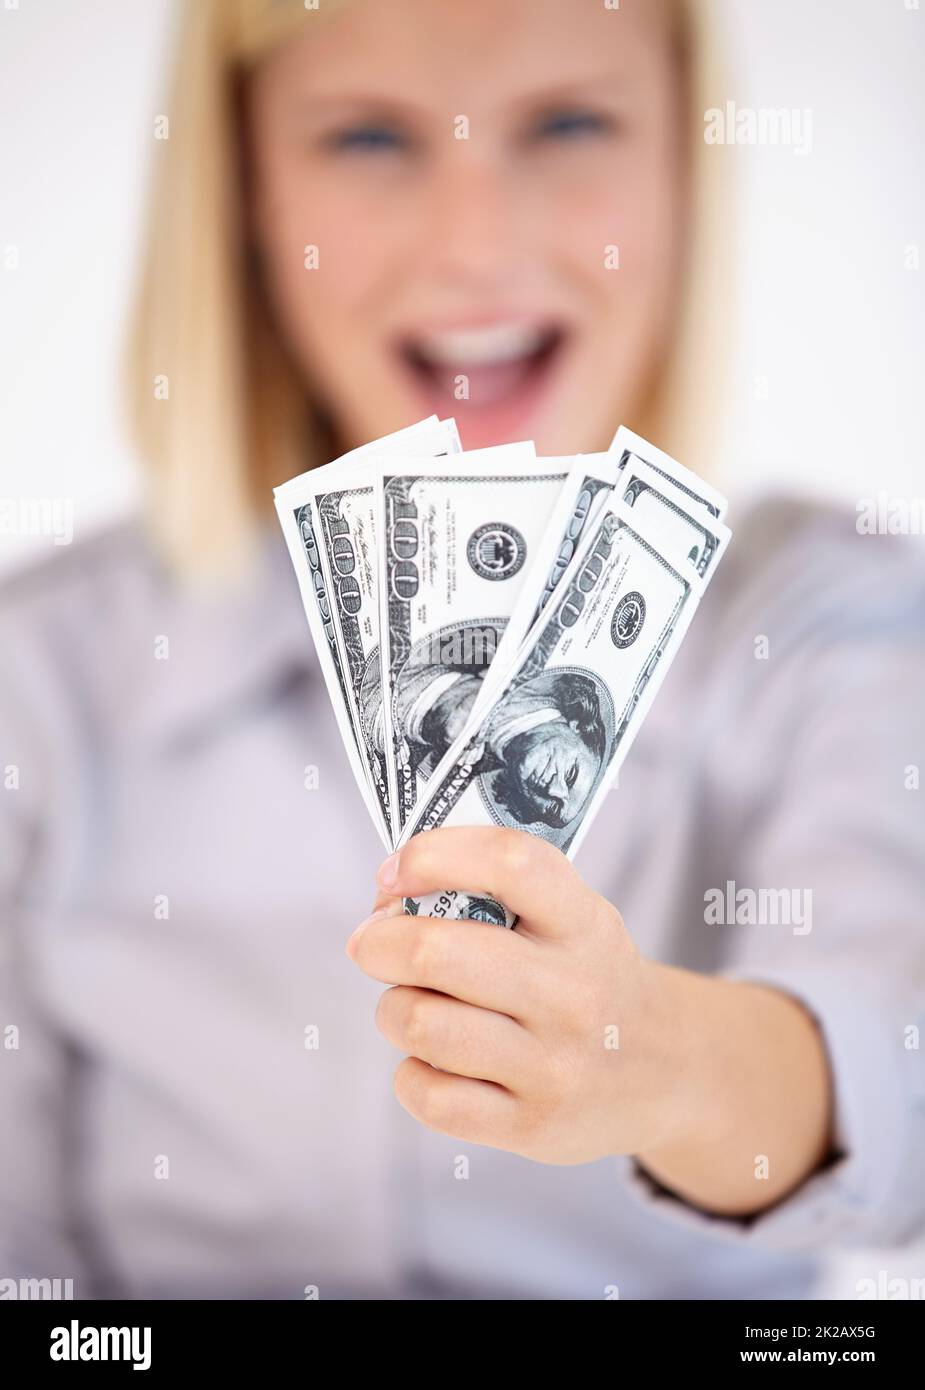 Hart verdientes Bargeld. Eine junge Frau zeigt Ihnen aufgeregt einen Wad Bargeld. Stockfoto